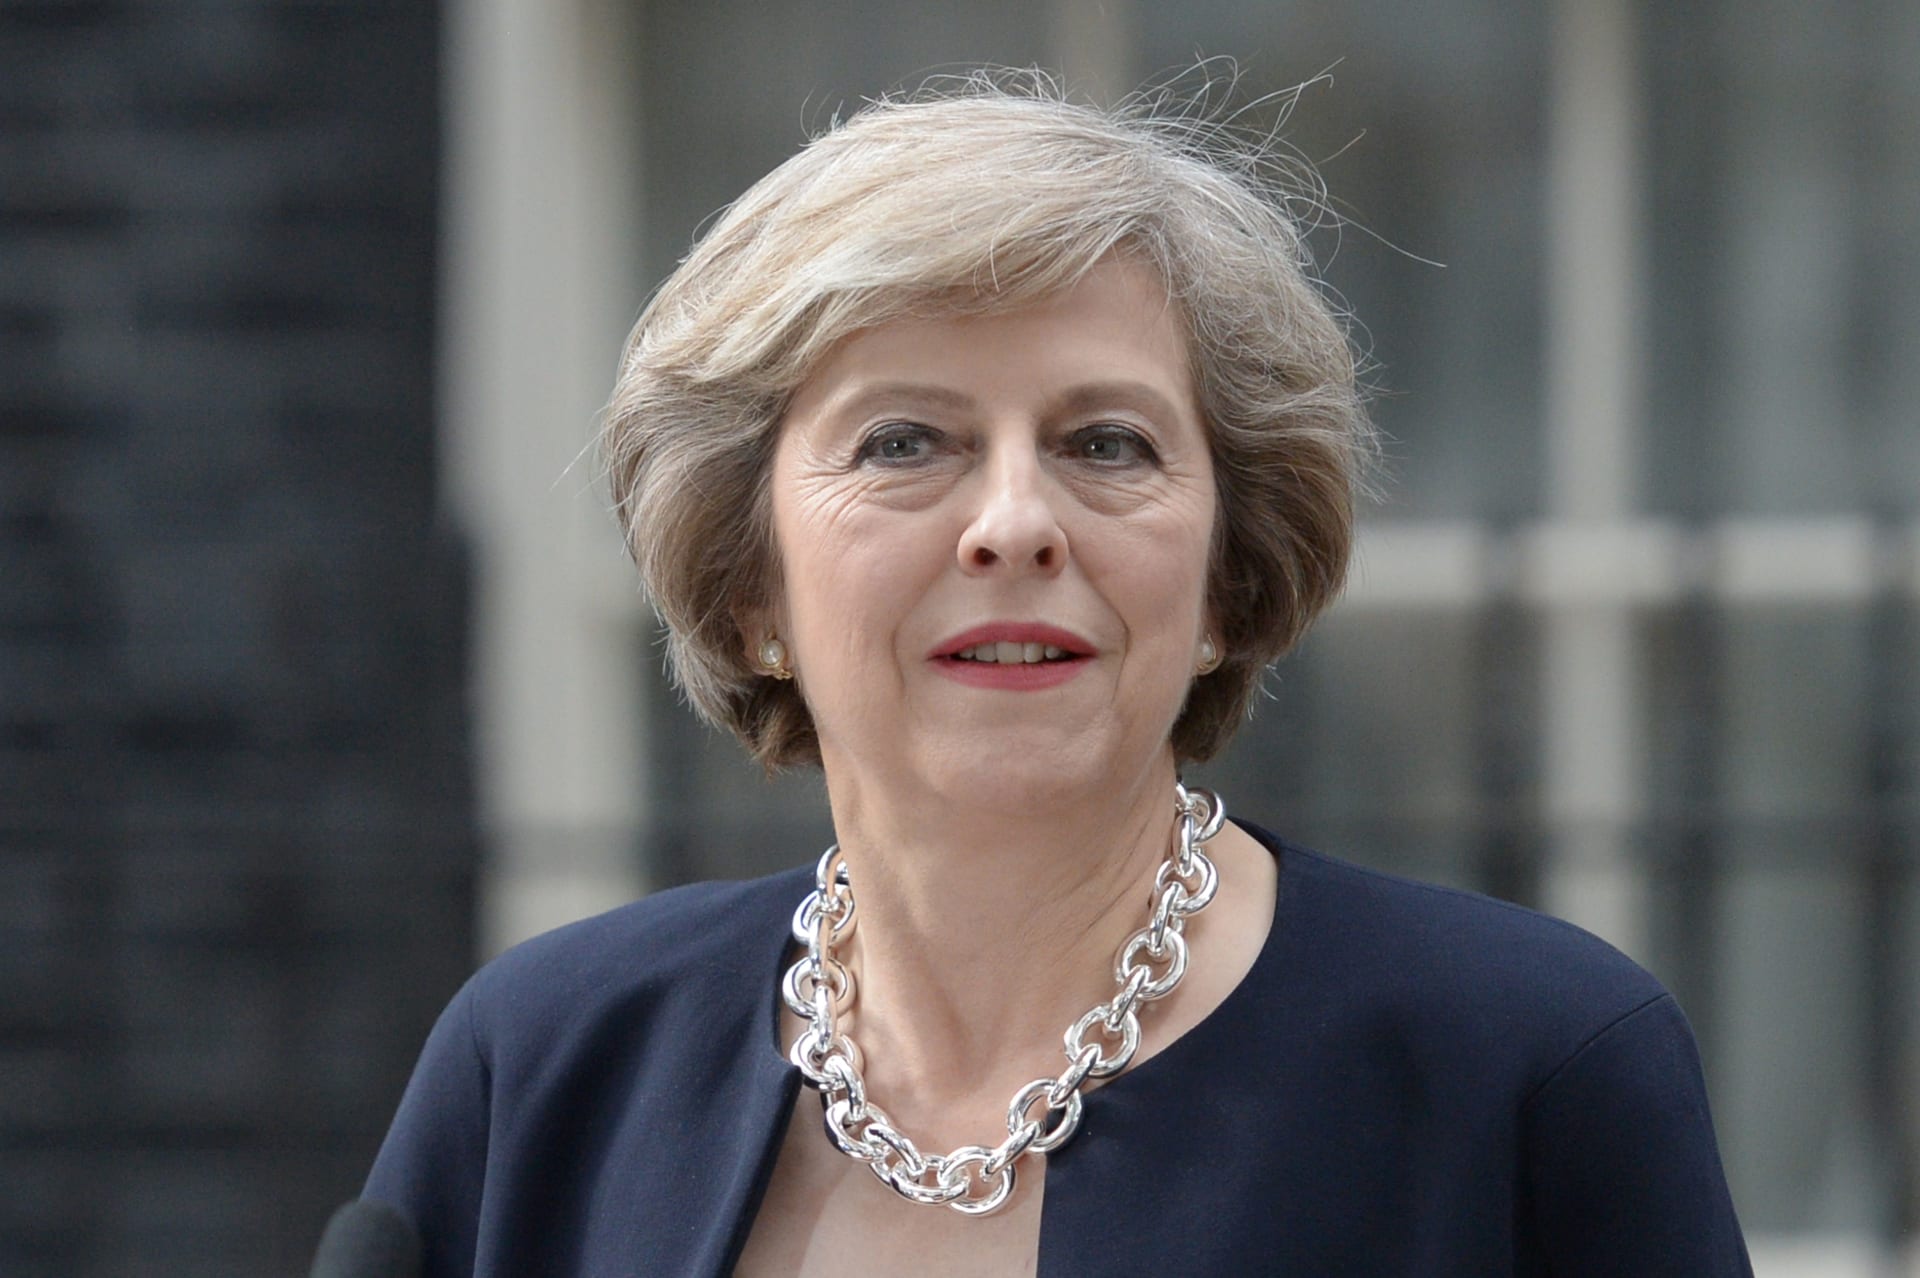 تيريزا ماي تبدأ تعيين وزراء الحكومة البريطانية الجديدة.. تعرف عليهم